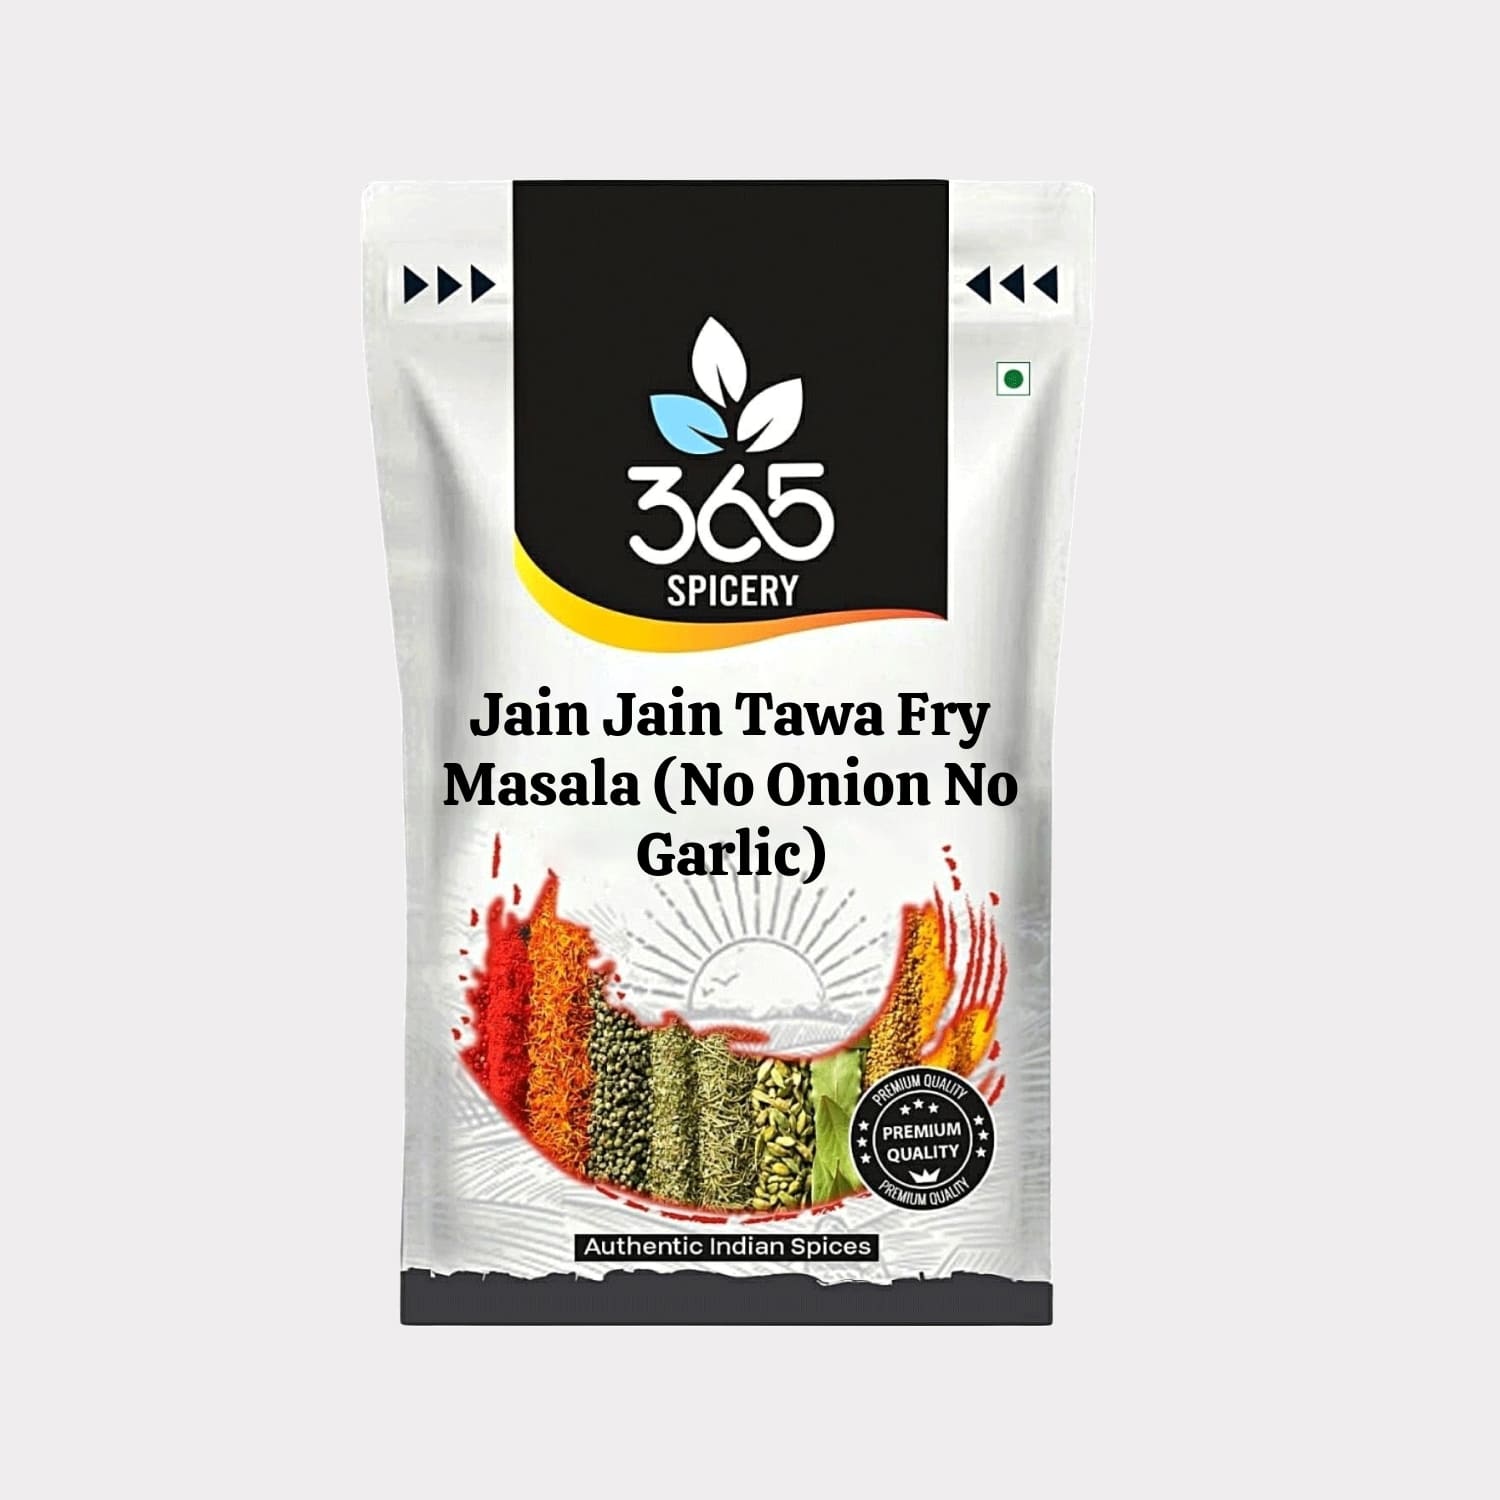 Jain Tawa Fry Masala (No Onion No Garlic)